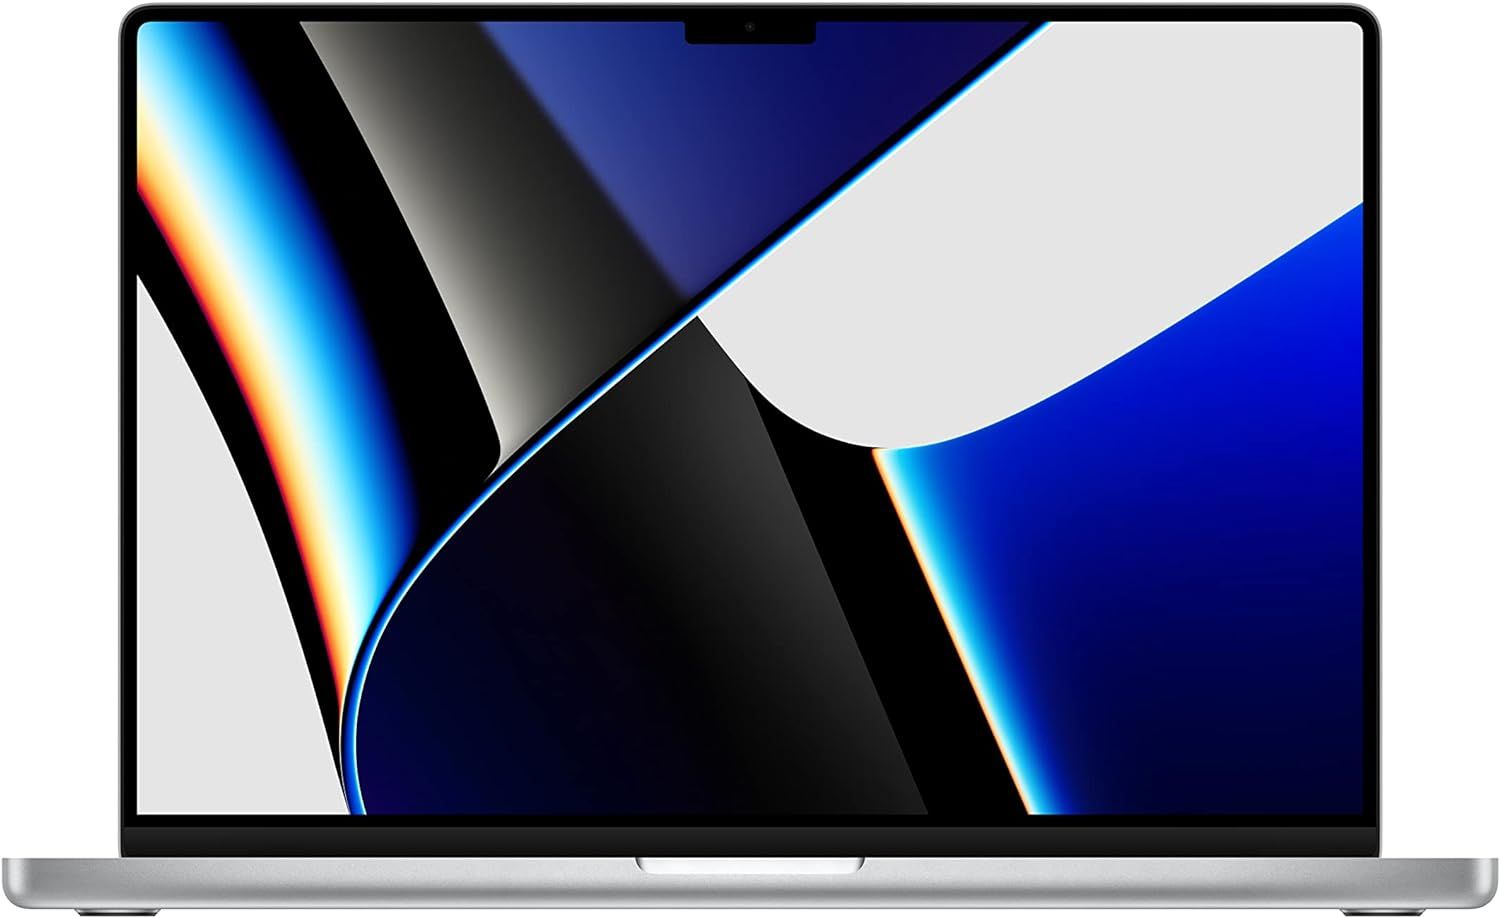 Amazonタイムセール祭り】Apple「MacBook」シリーズ整備済み品が